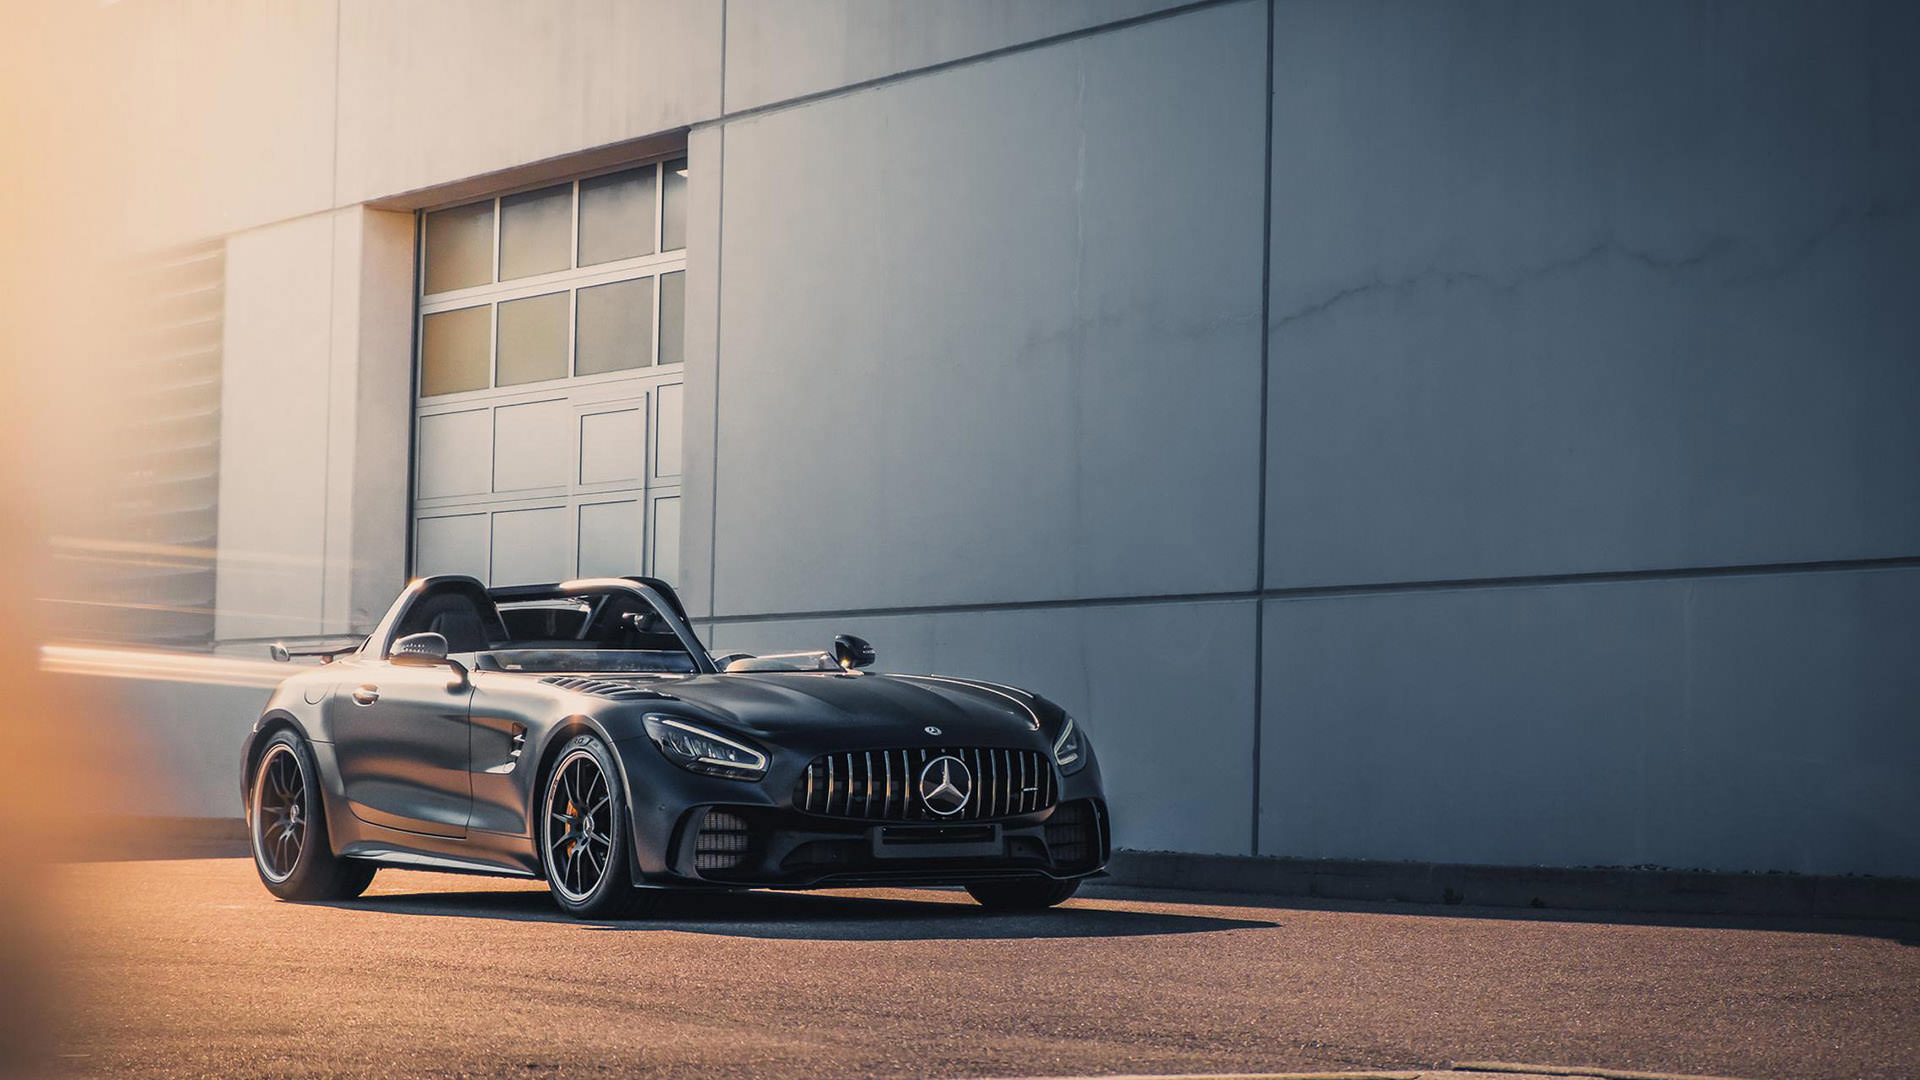 مرسدس آ ام گ جی تی آر اسپیدستر / Mercedes-AMG GT R Speedster مشکی رنگ با منظره ساختمان